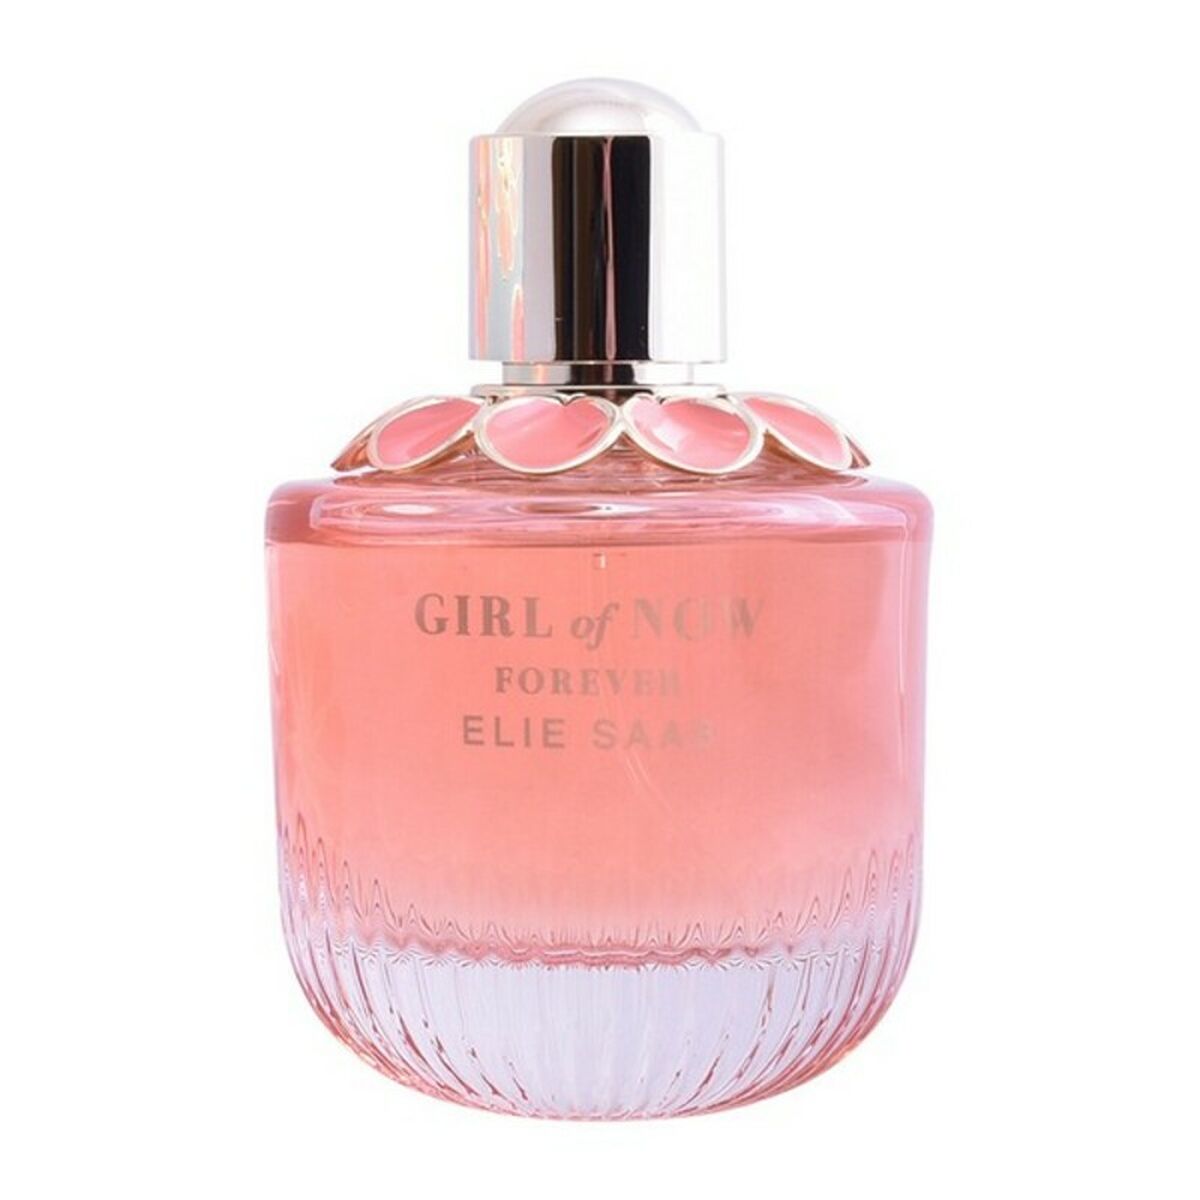 Perfume des femmes Elie Saab Edp Girl de Now Forever (90 ml)